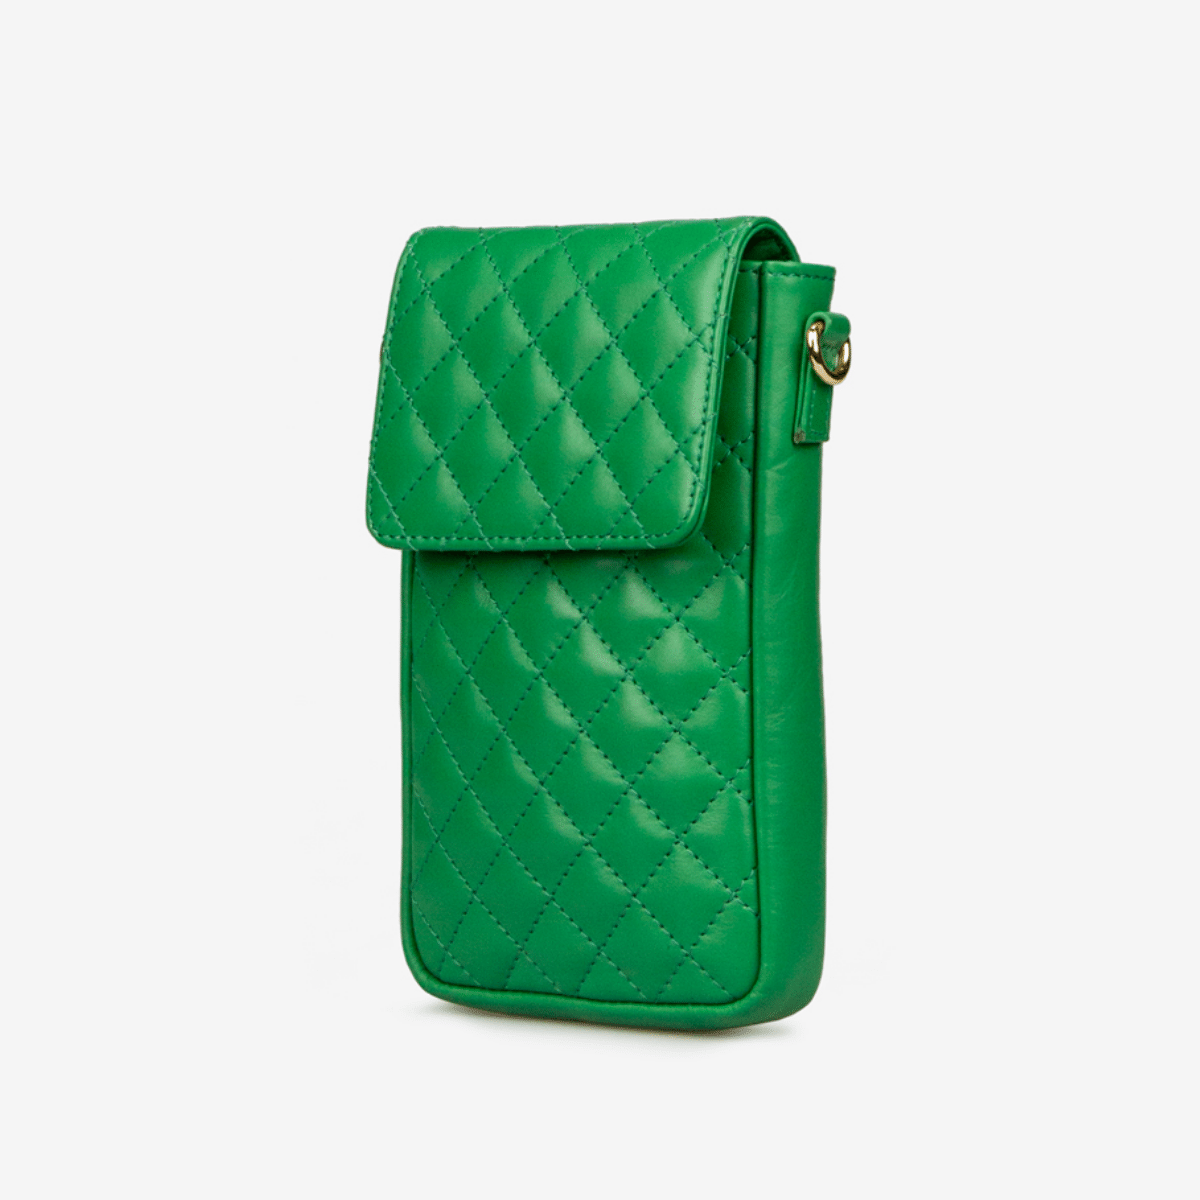 Taske til mobiltelefonen - Grøn - Celia - Hectershop